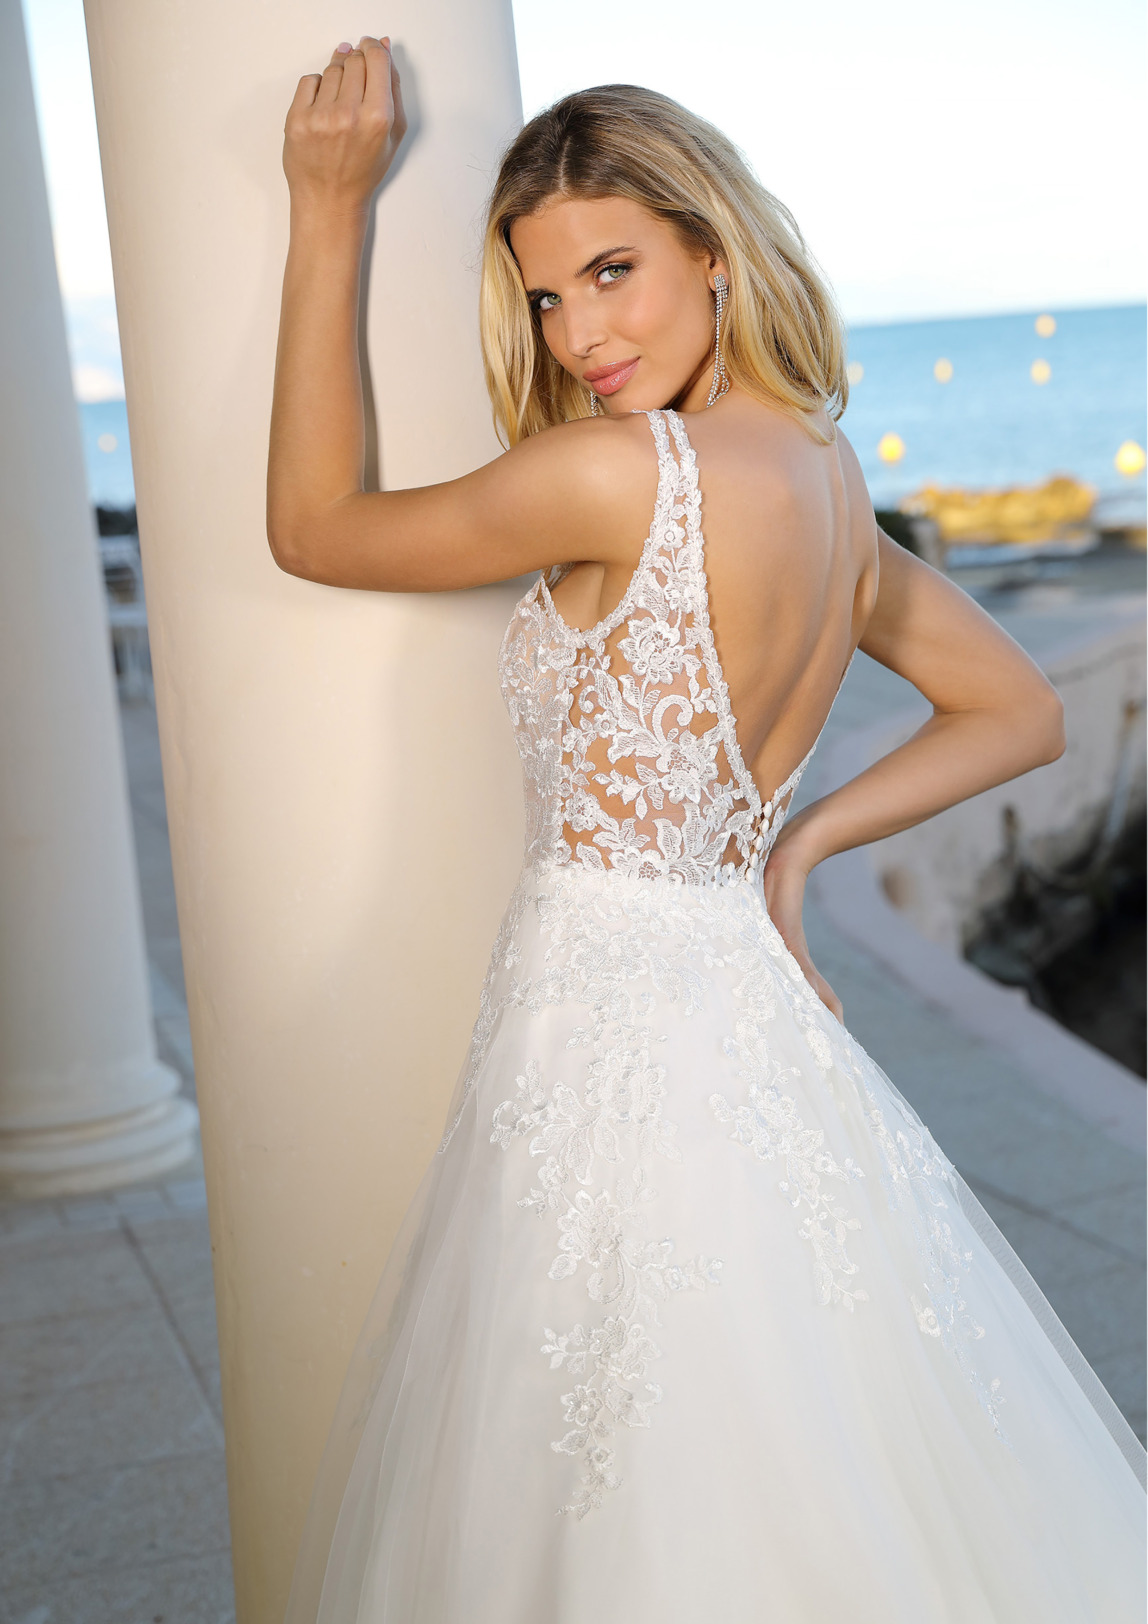 Brautkleider Hochzeitskleider in klassischer A Linie von Ladybird Modell 922005 dieses Kleid hat einen V-Ausschnitt mit breiten Trägern und wunderschöne Spitzenapplikationen sowie einen tiefen Rückenausschnitt Bild 1